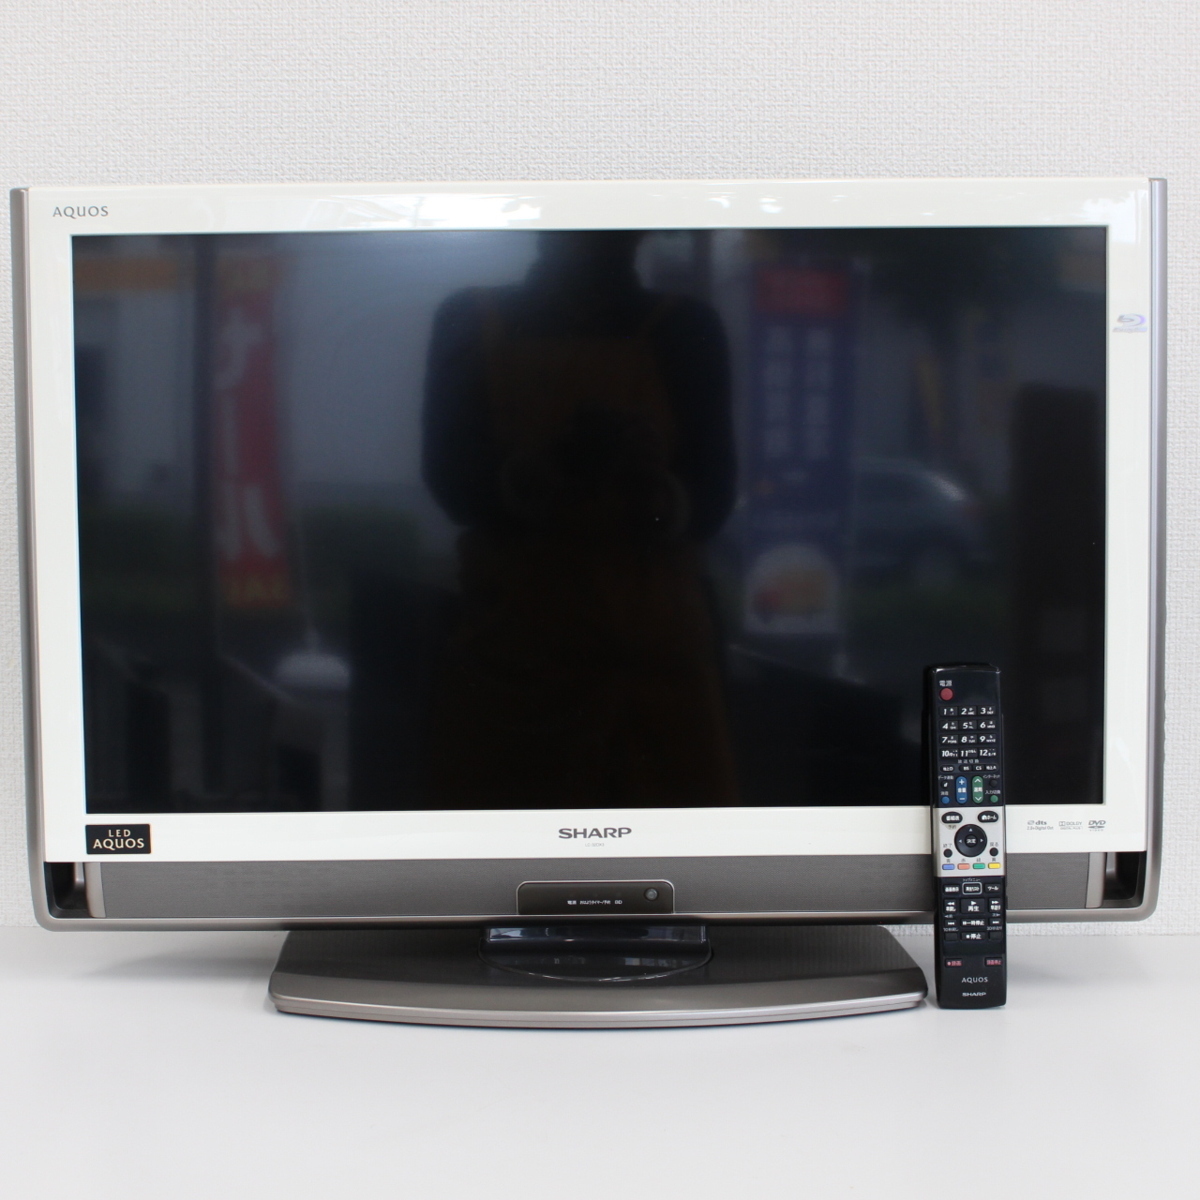 川崎市麻生区にて シャープ 液晶カラーテレビ LC-32DX3 2010年製 を出張買取させて頂きました。